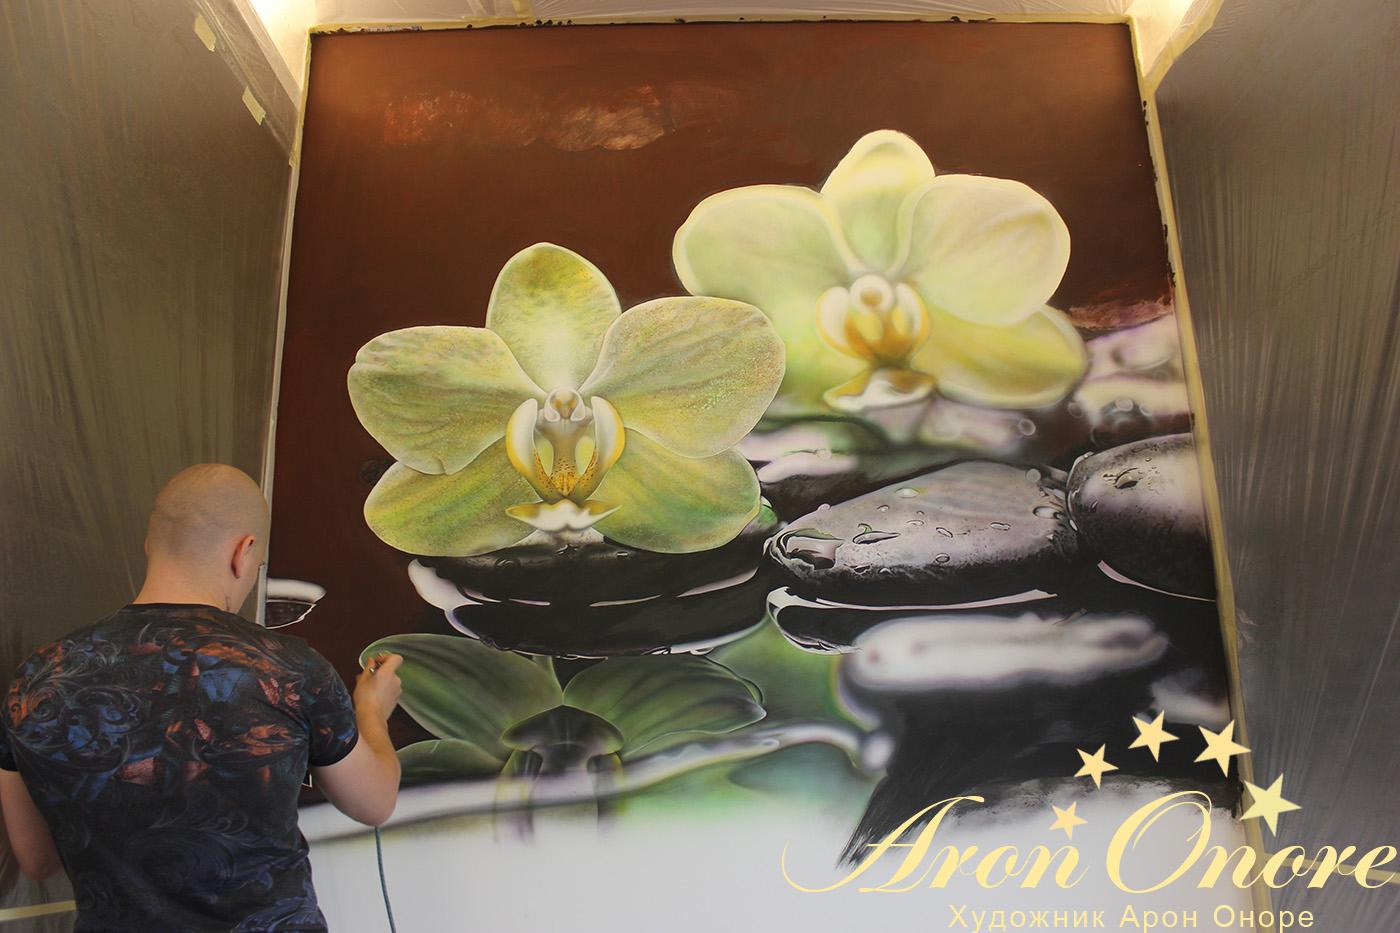 Художник Арон Оноре – рисует на стене зеленый стебель цветка